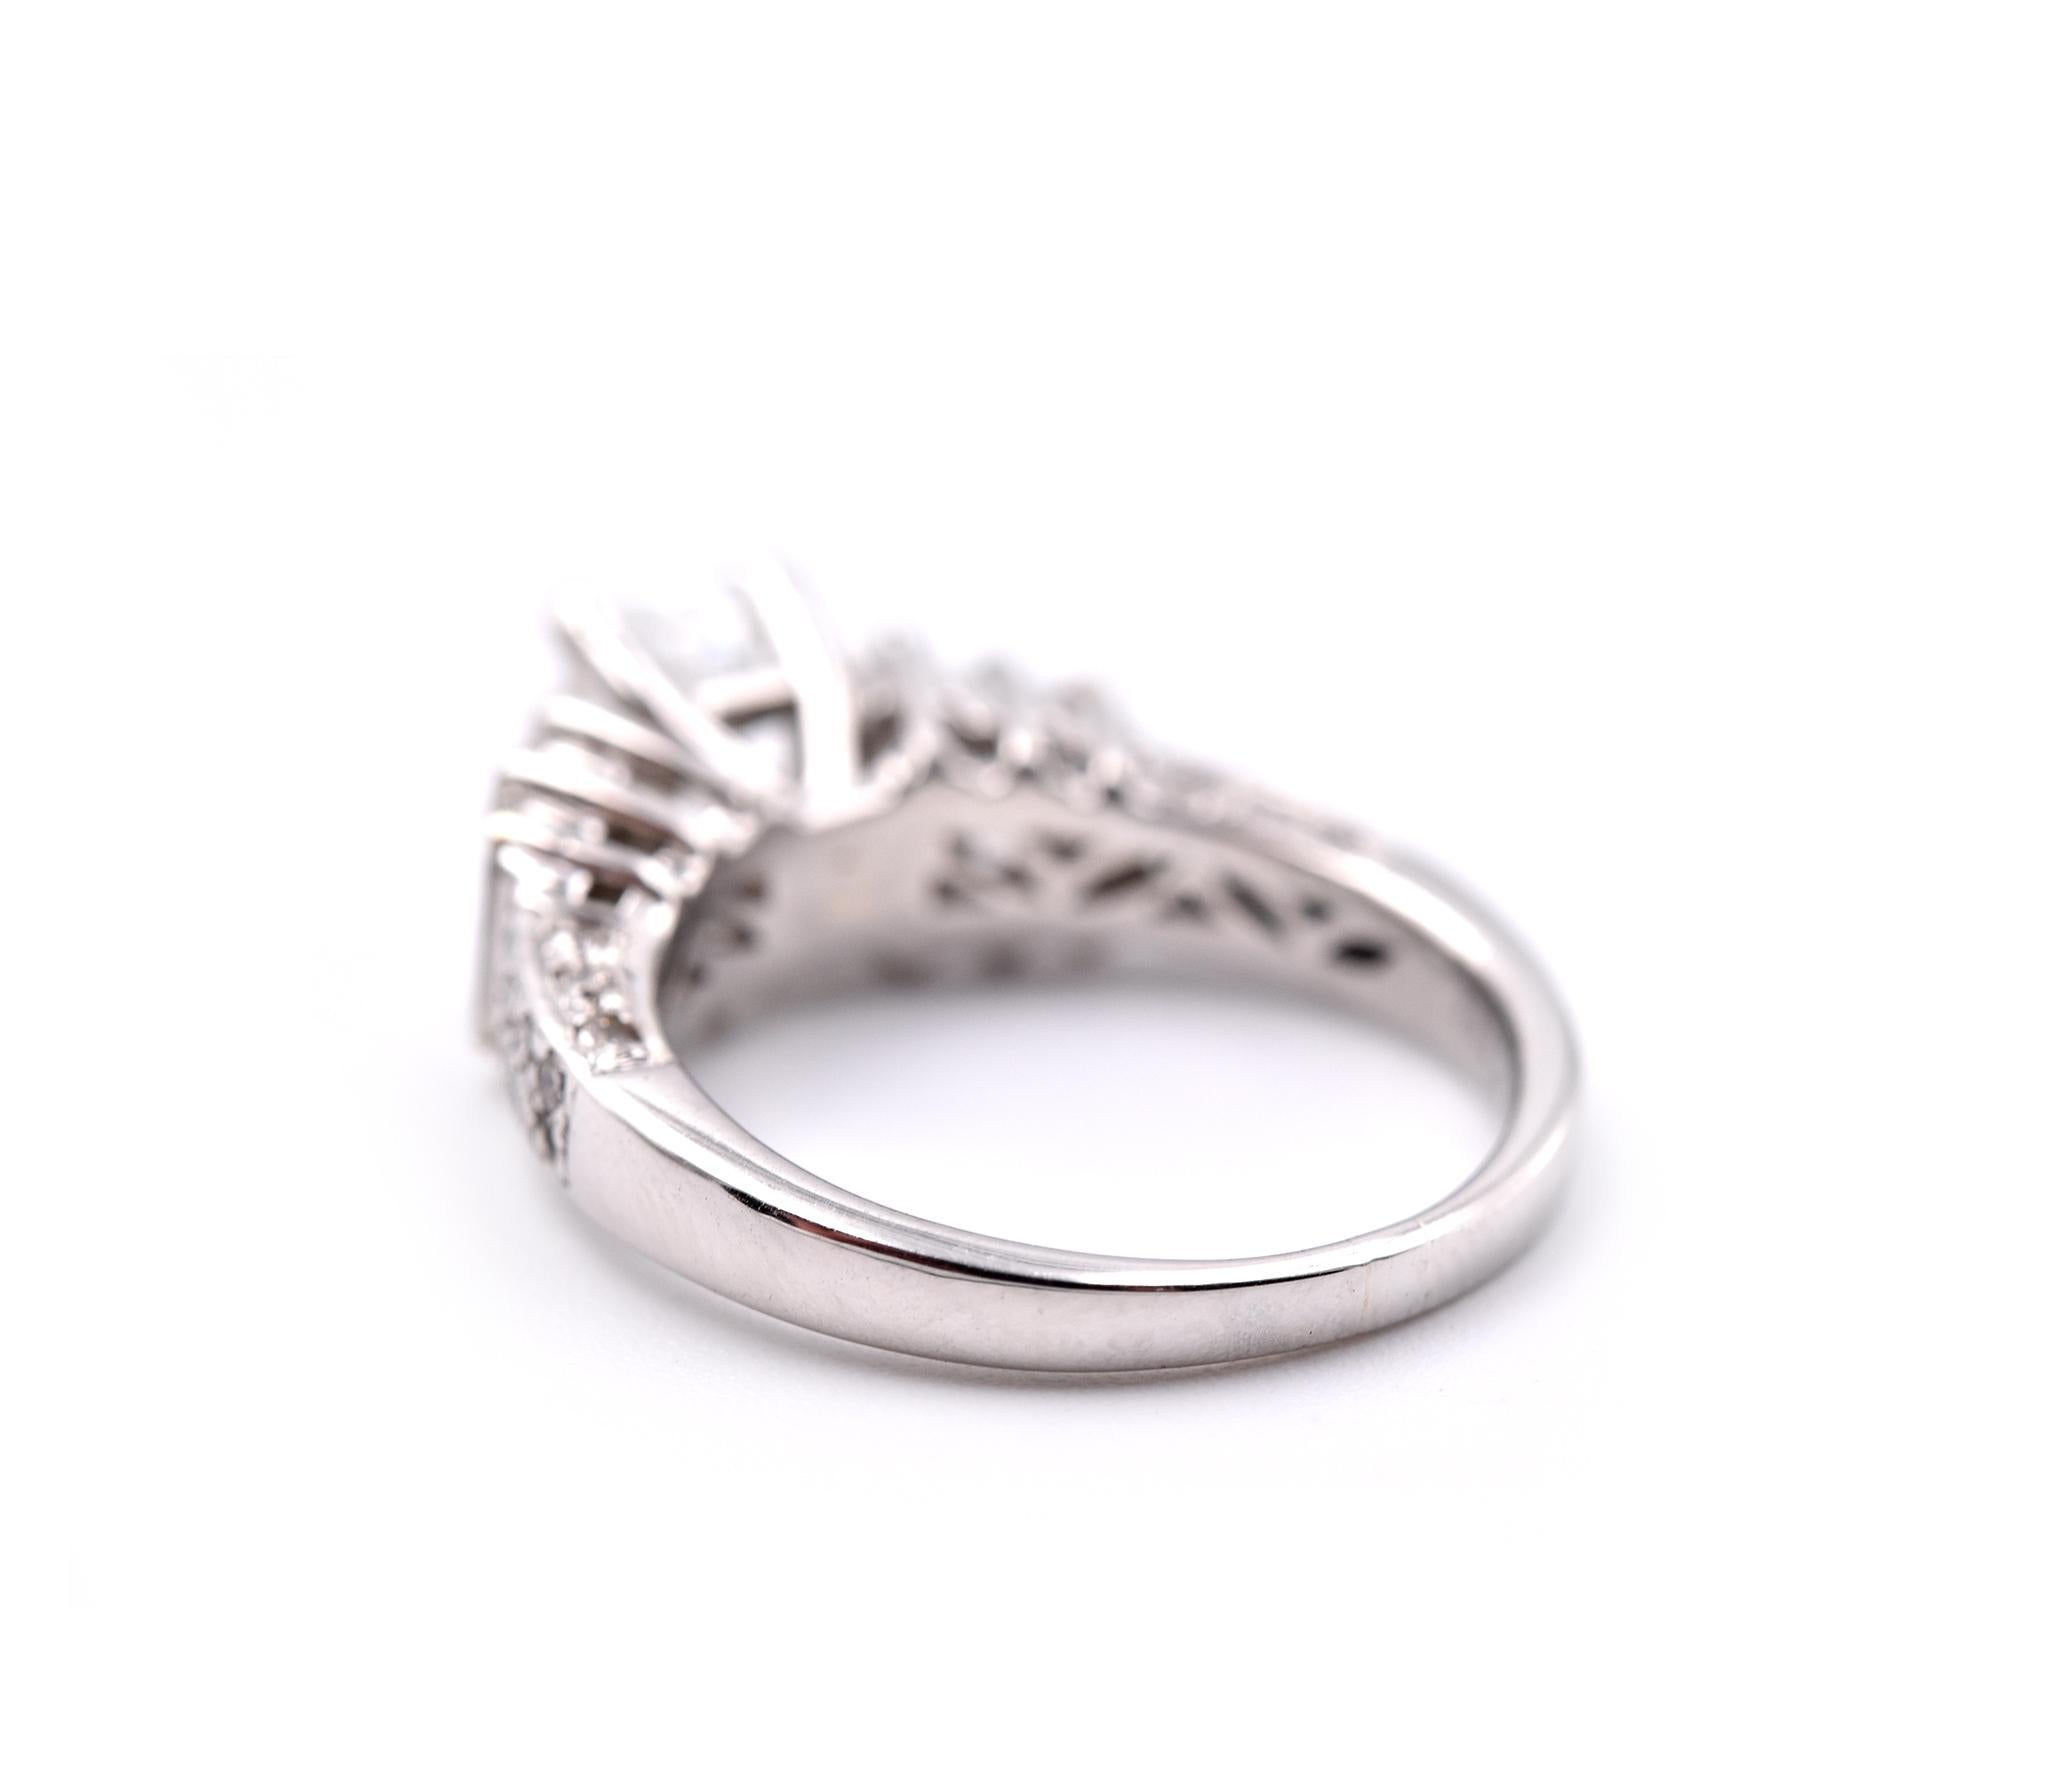 Emerald Cut Platinum 1.13 Carat Diamond Engagement Ring